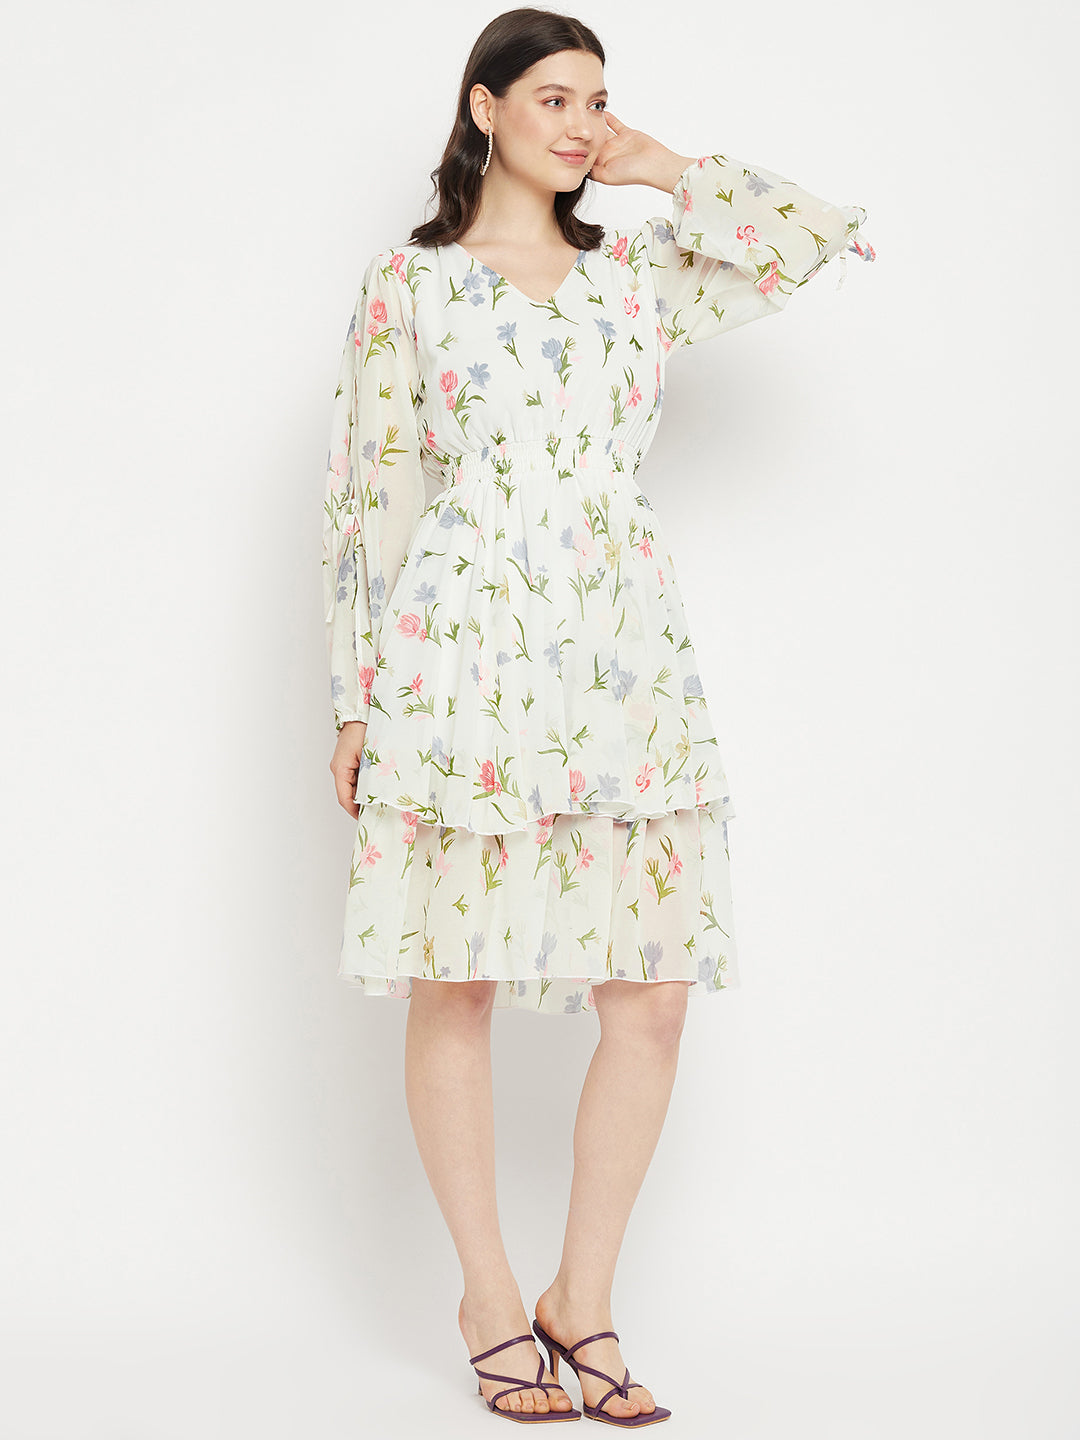 V Neck Floral Print Slit Sleeve Layered Georgette Fit & Flare Dress